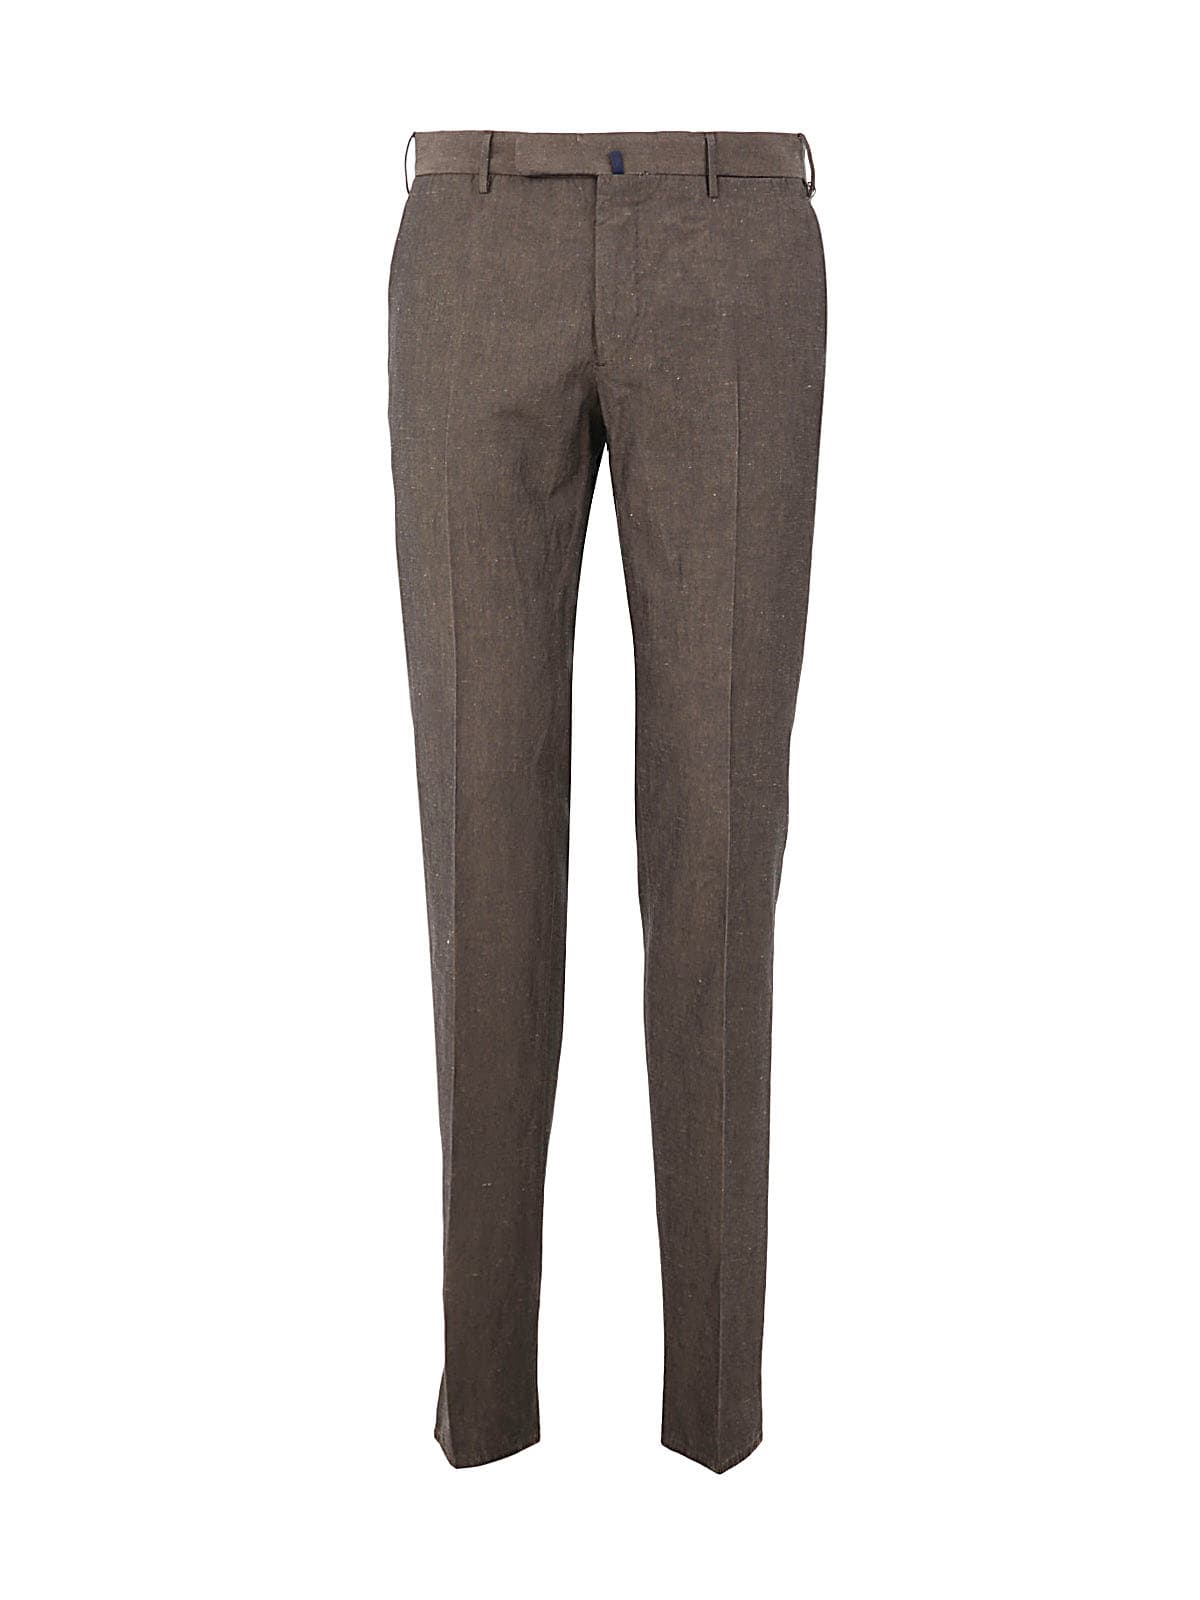 Incotex Venezia 1951 Cotton And Linen Slim Fit Pants